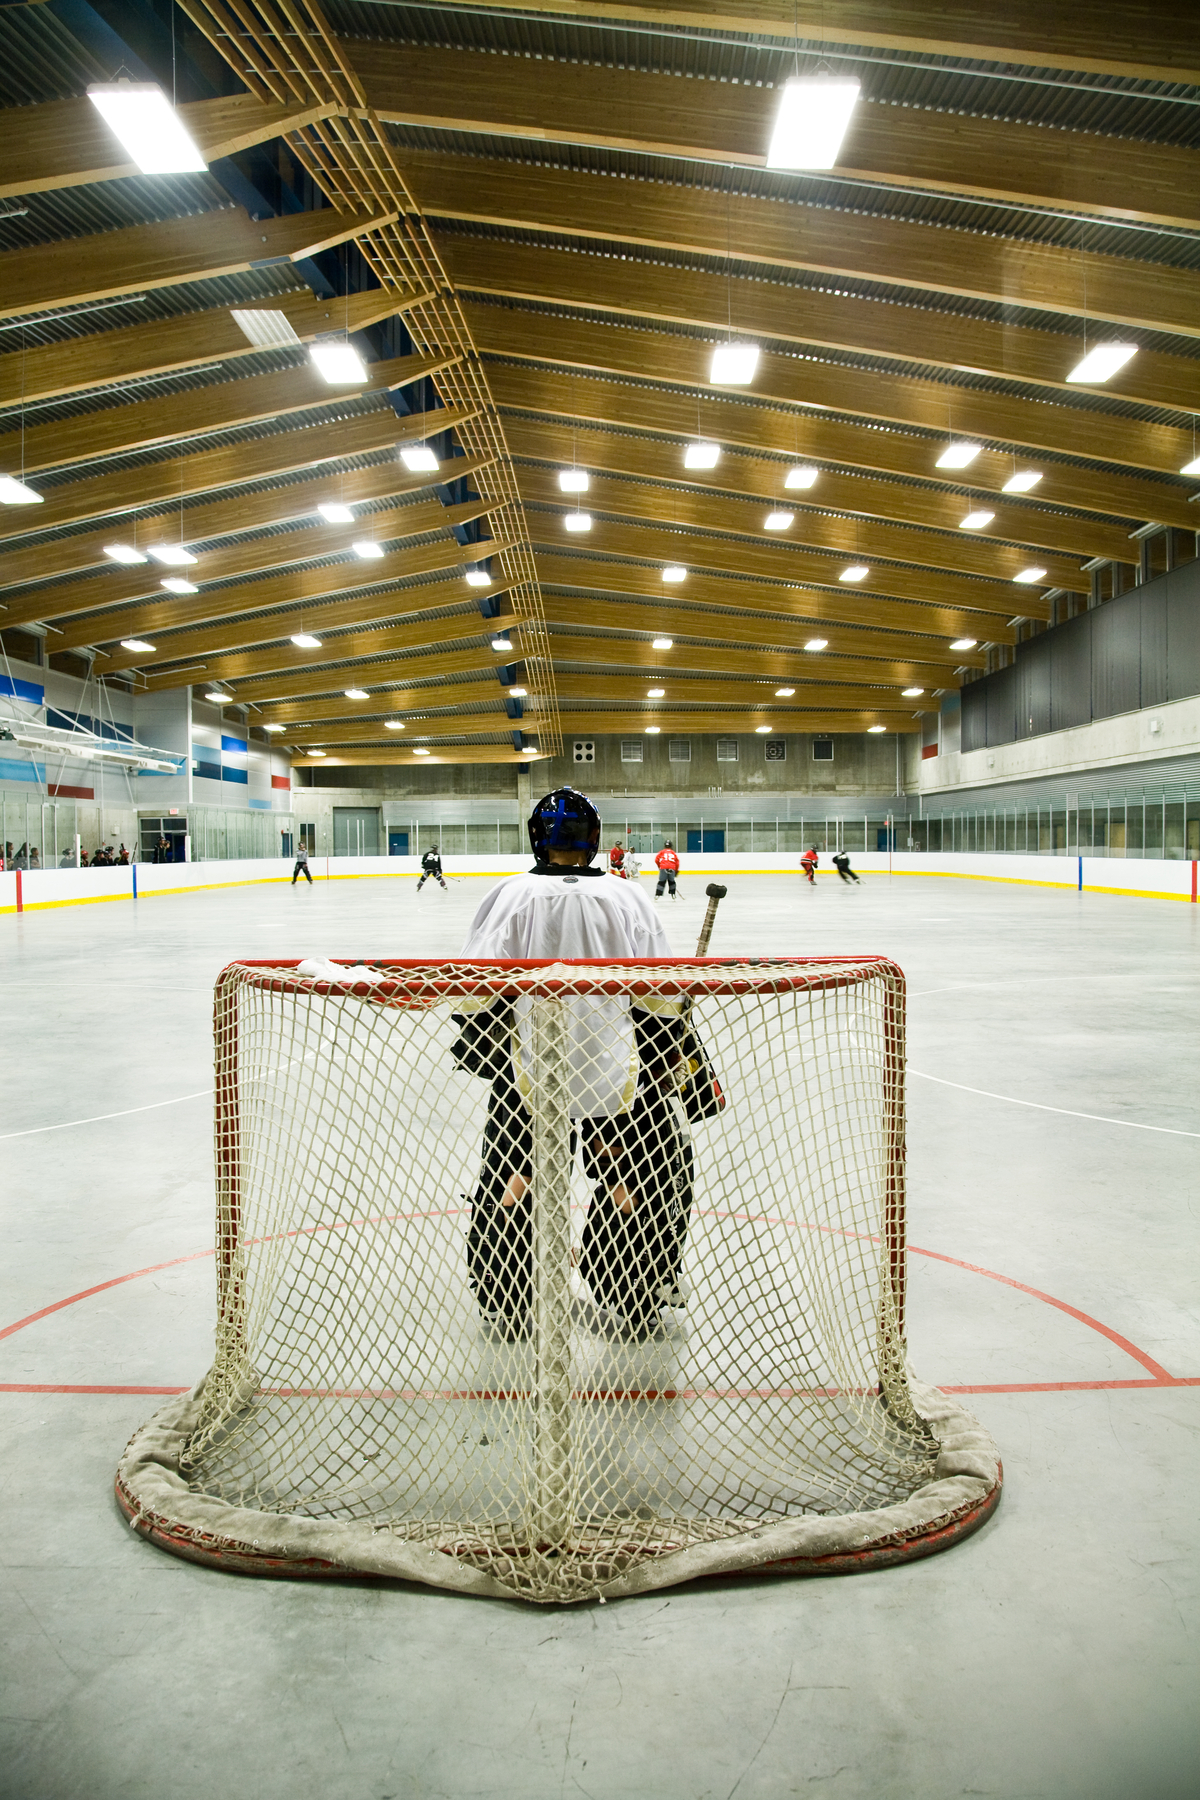 特劳特湖溜冰场的内部视图，从守门员的角度展示冰球练习，所有都在胶合木(胶合木)屋顶设计下，提供自然通风和照明